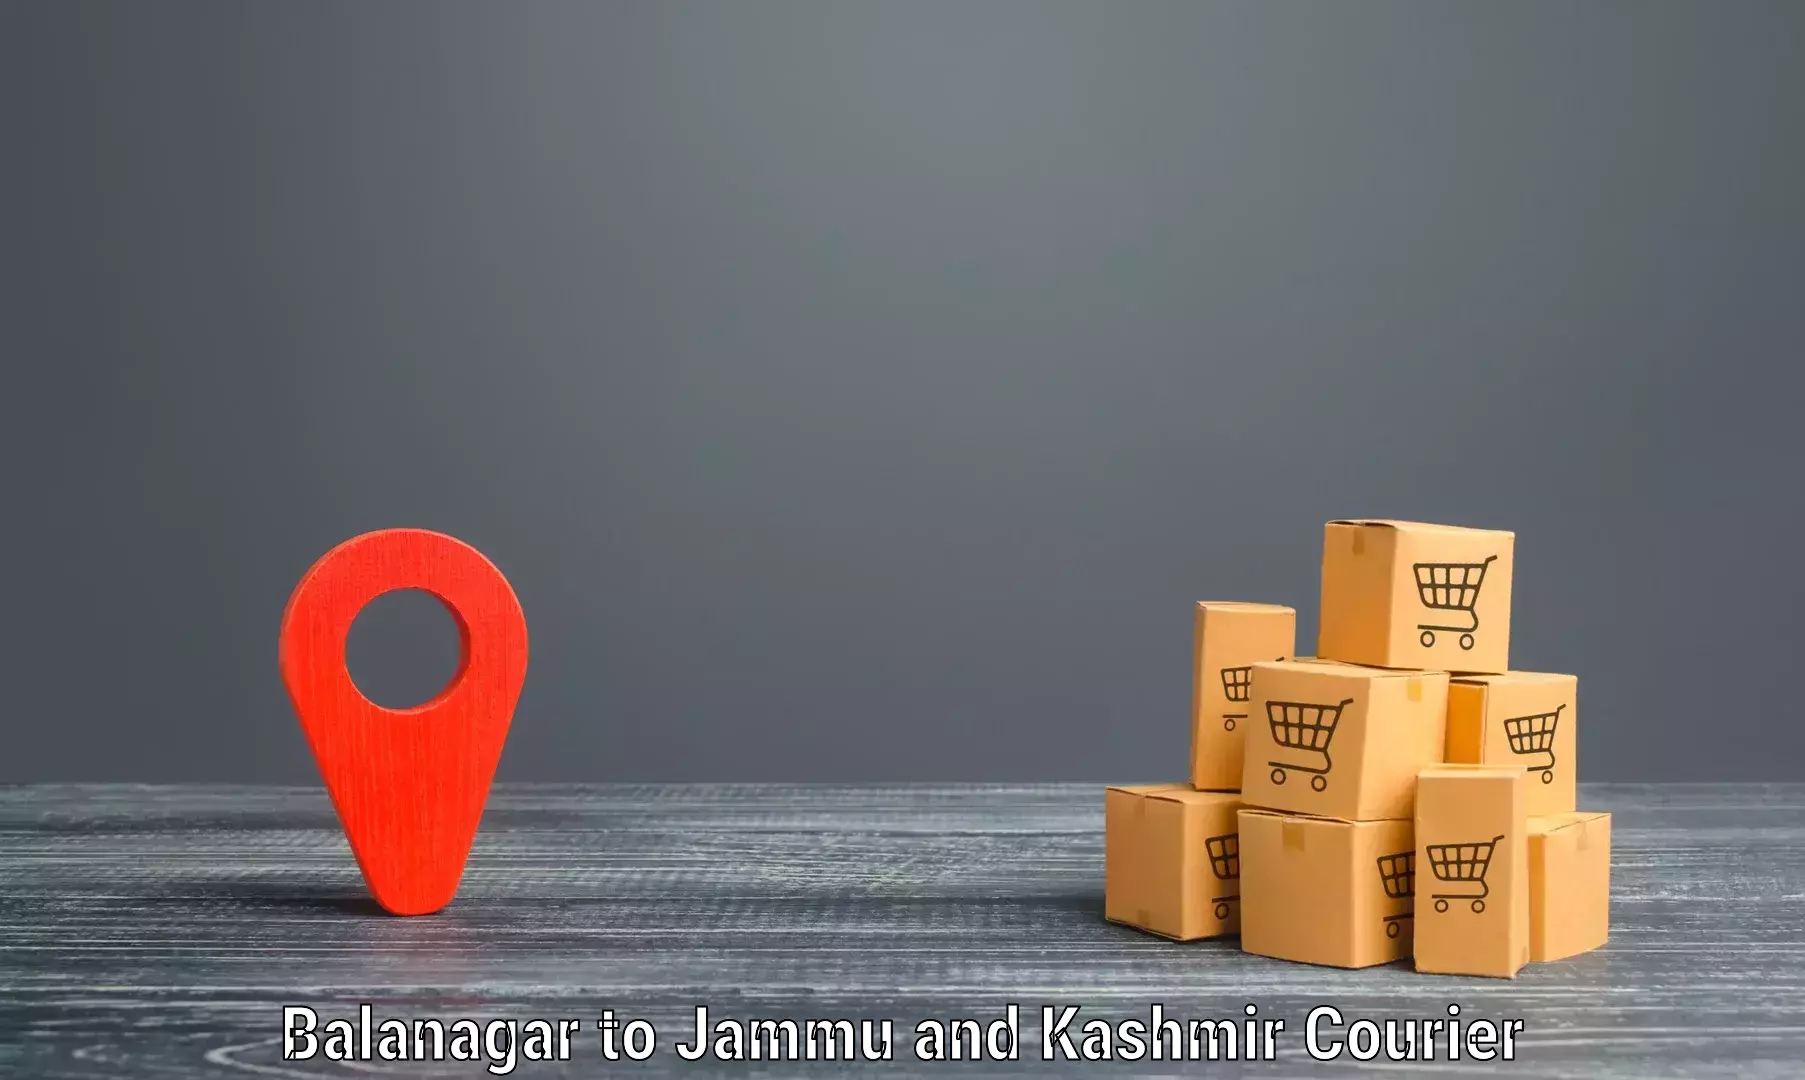 Comprehensive freight services Balanagar to Ramban